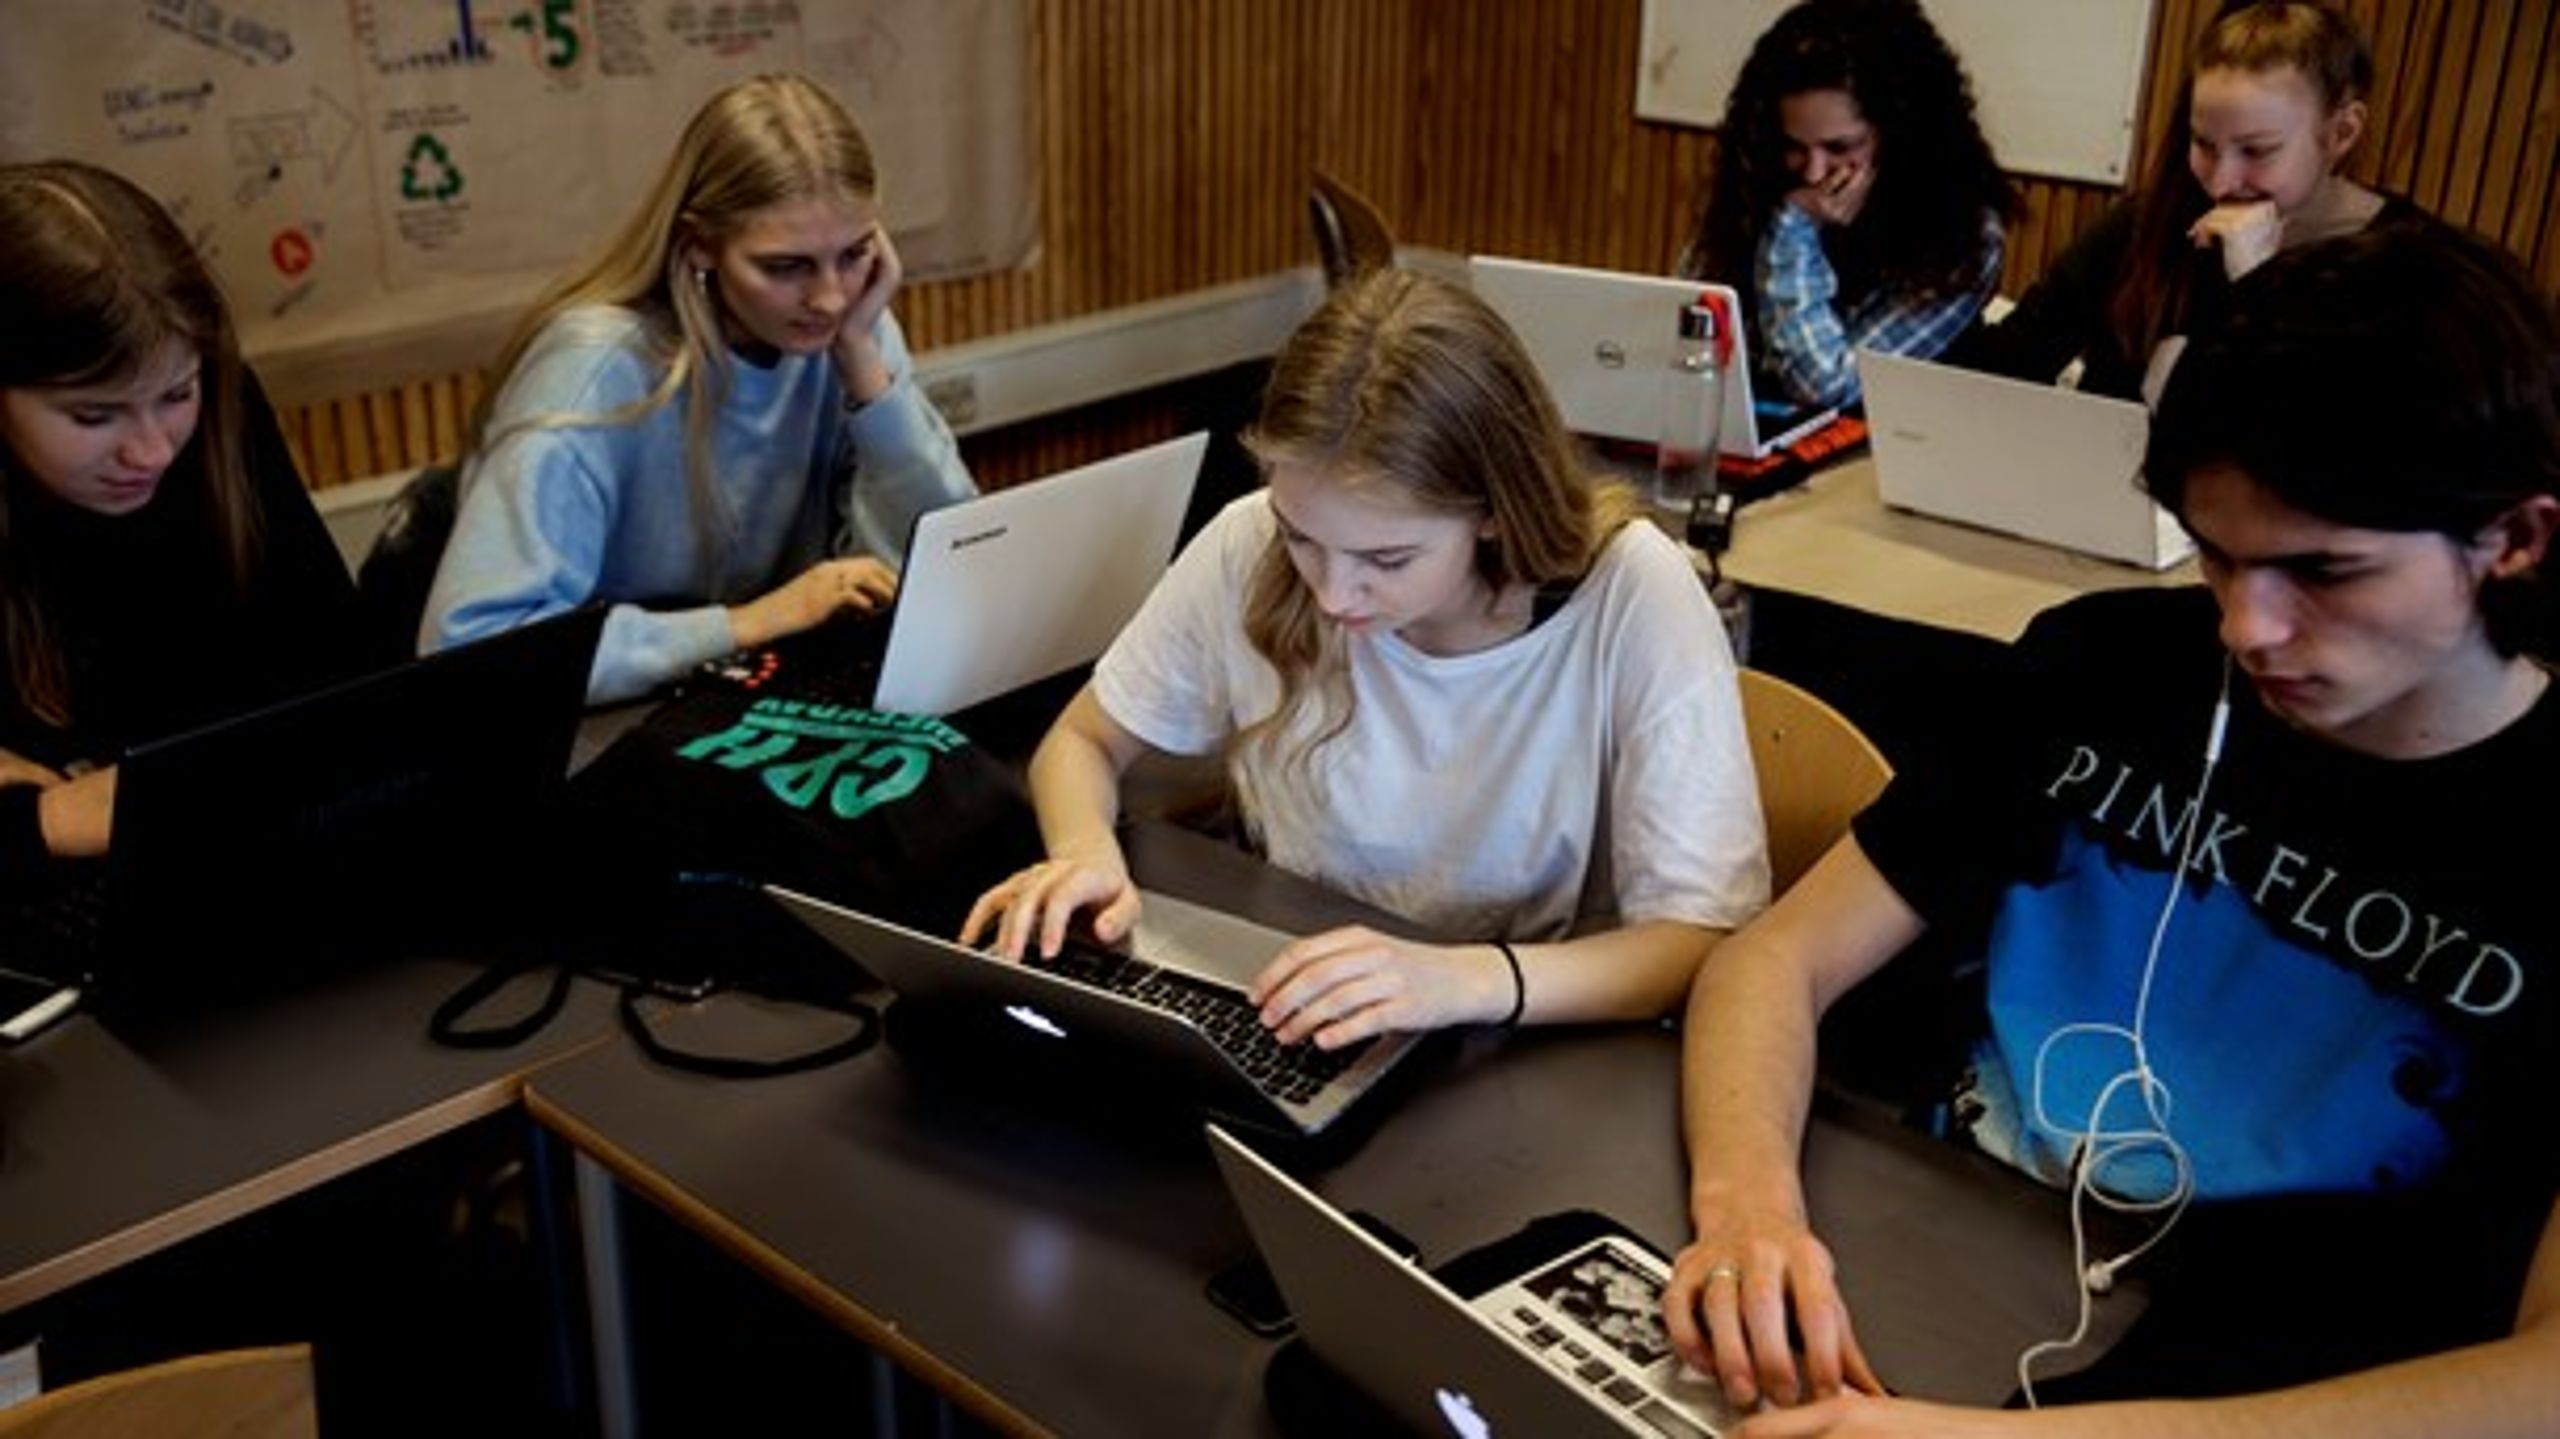 Selvom det er godt med et fokus på skoleelevers digitale kompetencer, skal alle ikke lære at programmere, skriver Mille
Østerlund.

<br>